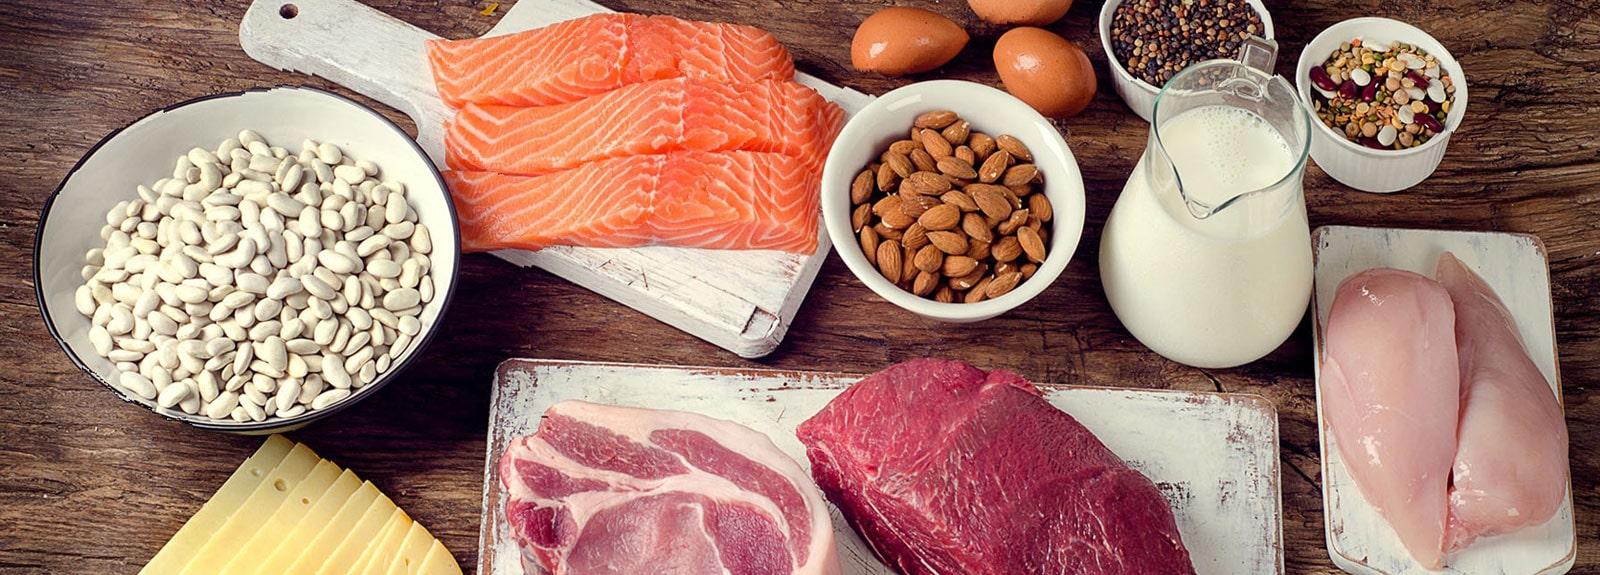 Table remplie d'aliments riches en protéines, dont du saumon, du bœuf, des noix, des haricots, des œufs et du lait